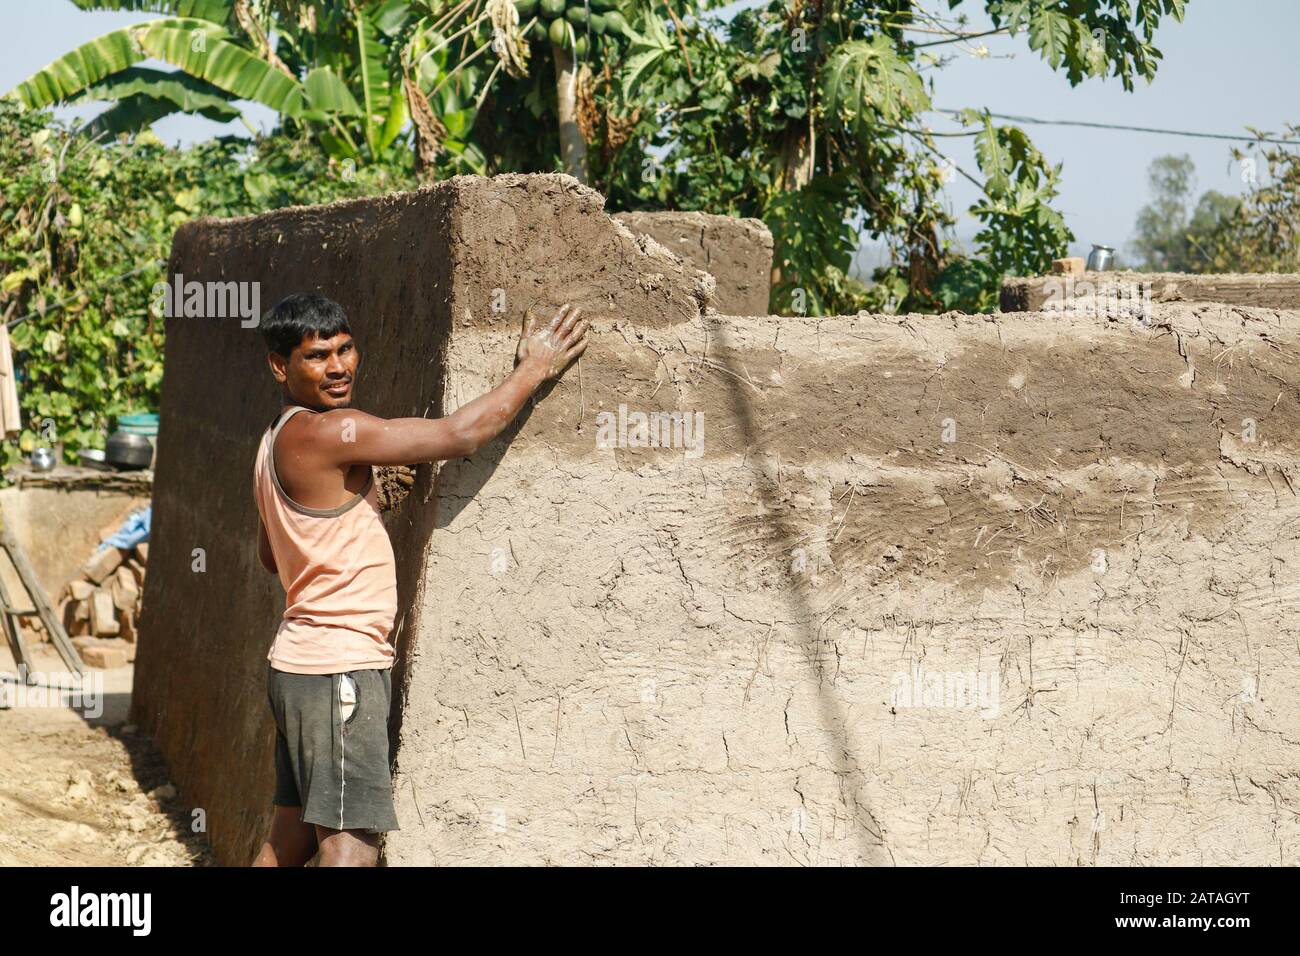 Mawai Inde 28 Janvier. 2020 : homme tribal rural construisant la maison de boue. Banque D'Images